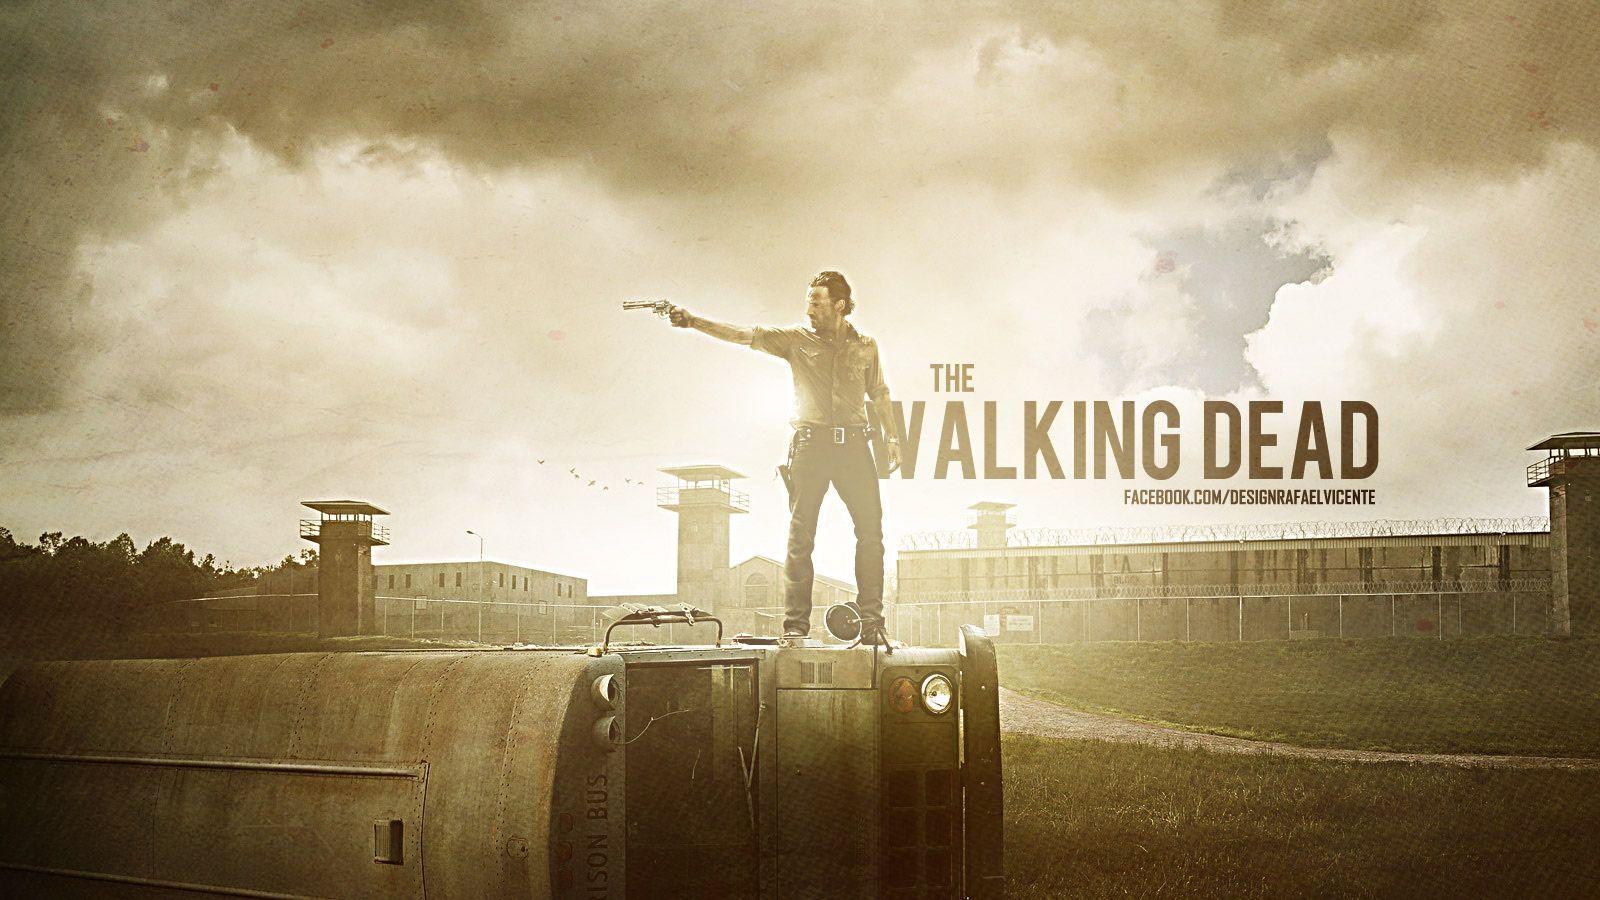 The Walking Dead Free Wallpaper Wallpaper 640×960 The Walking Dead